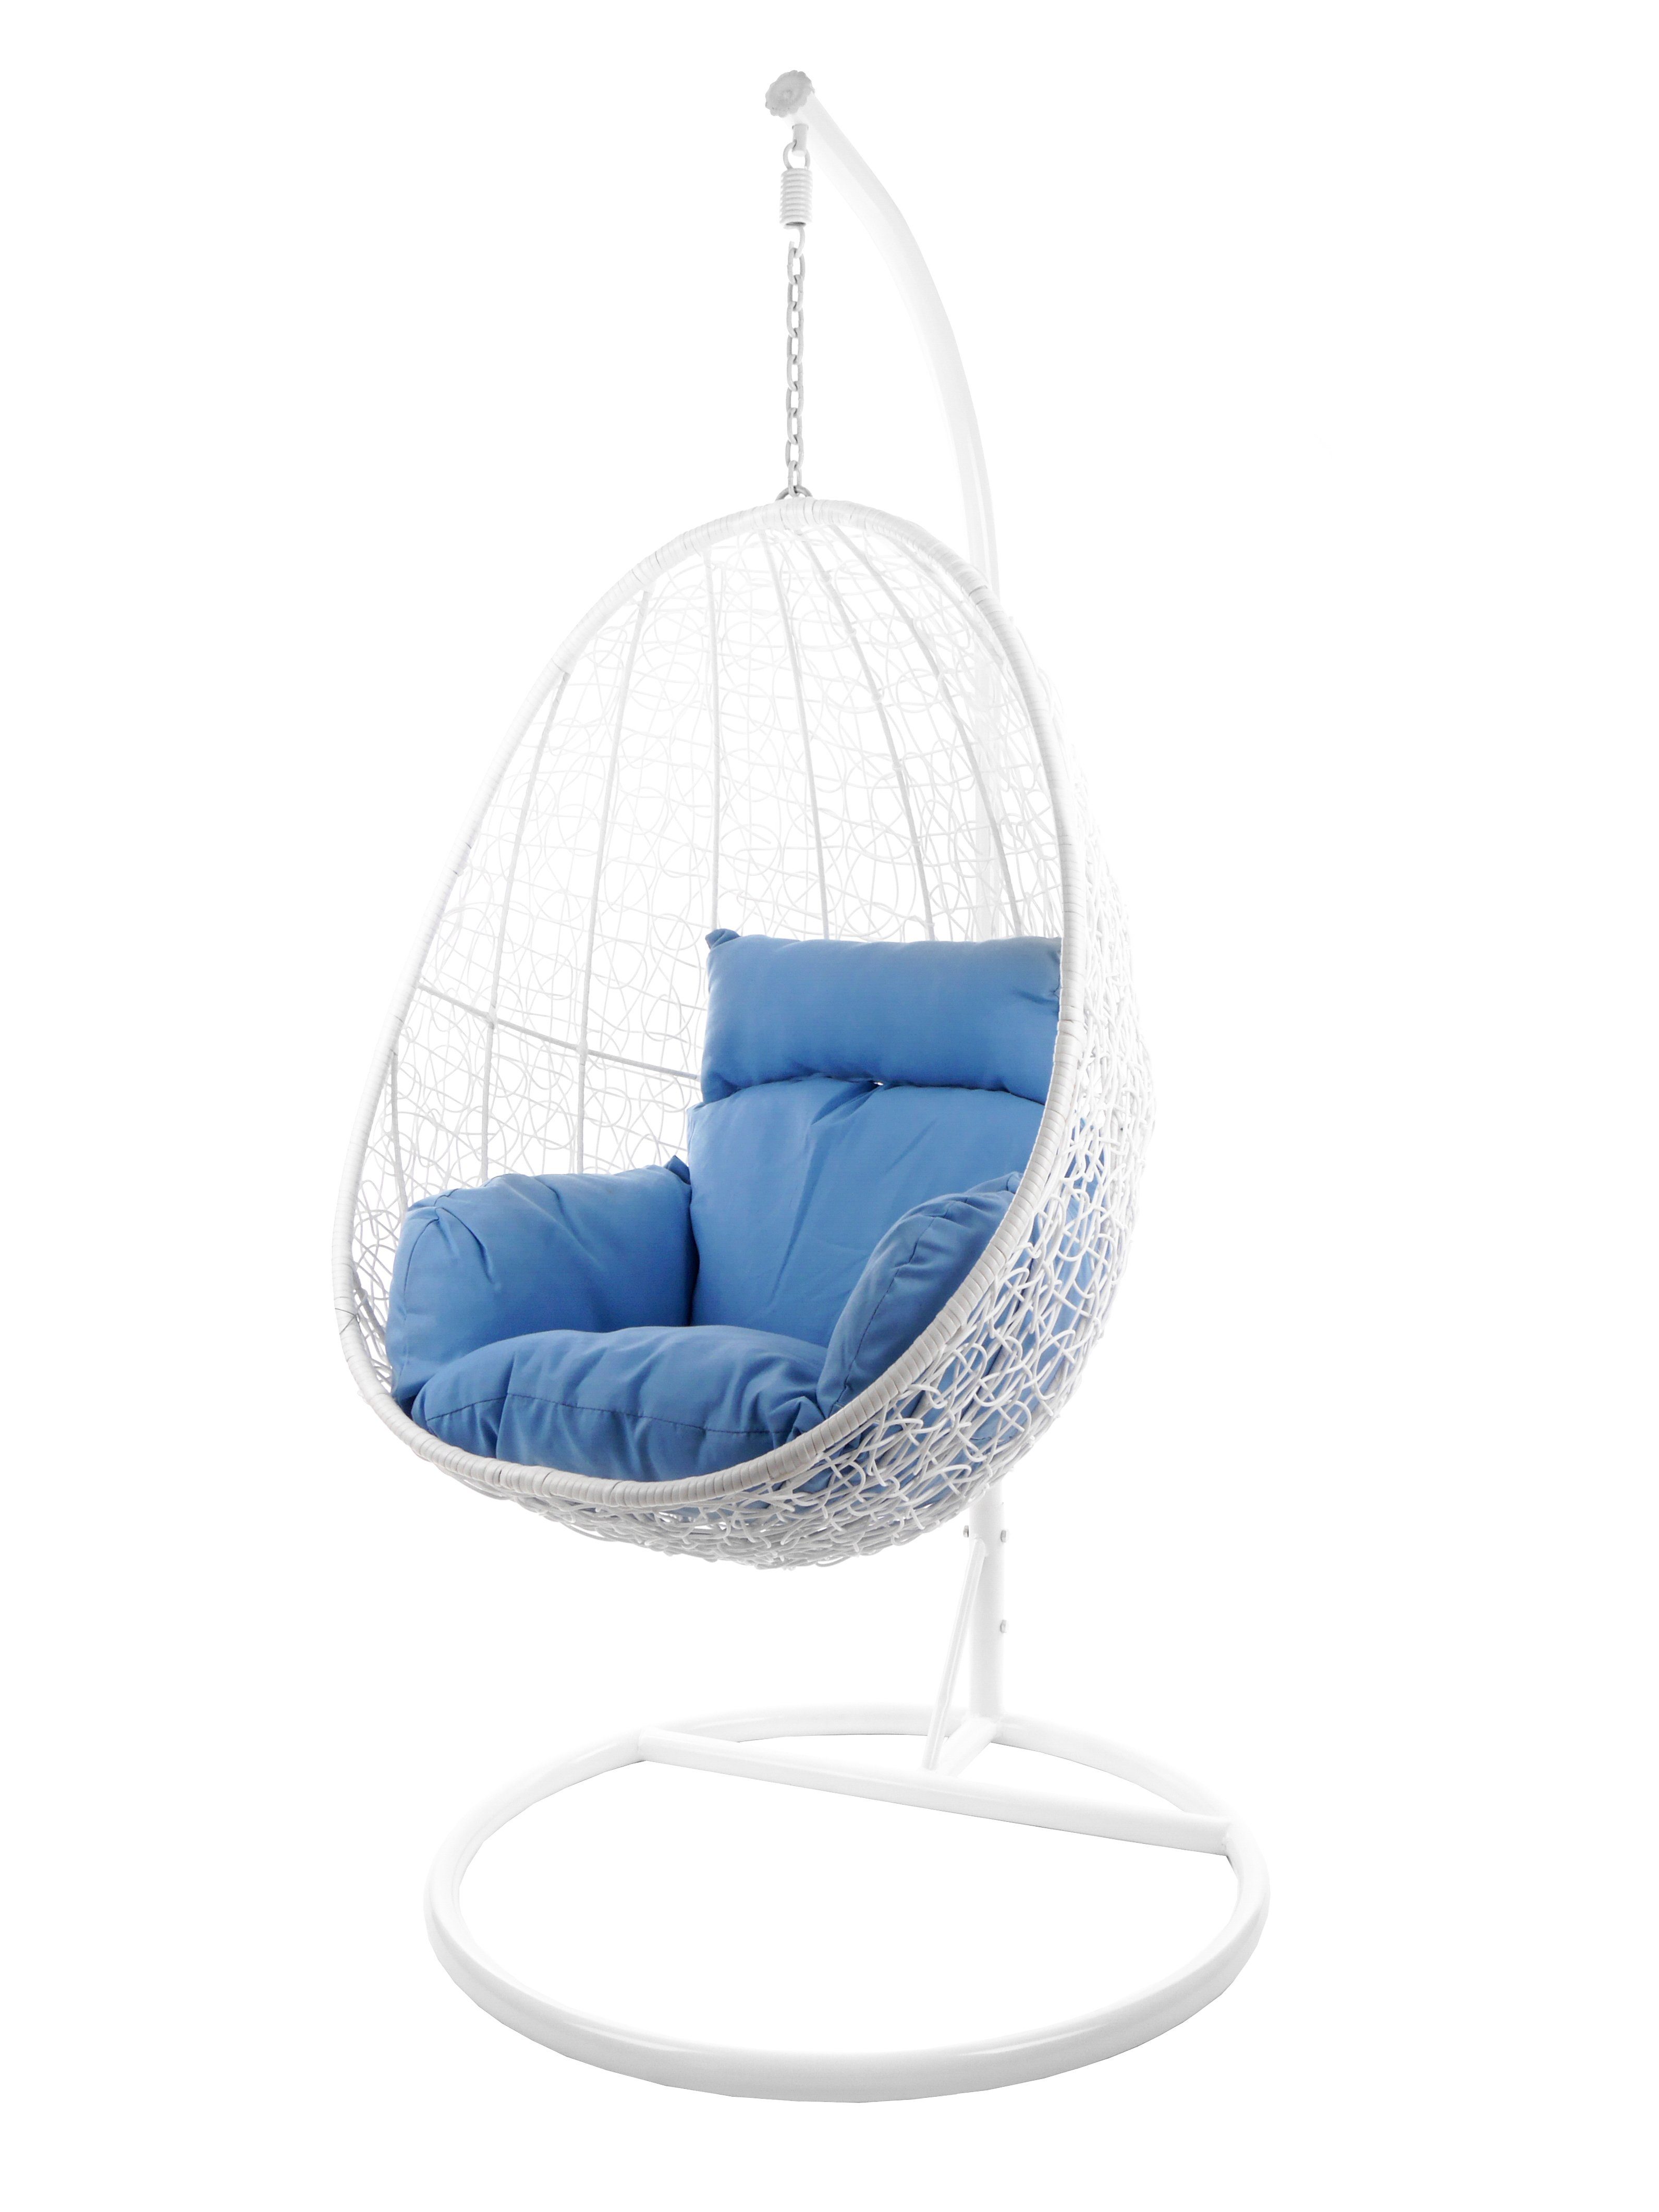 KIDEO Hängesessel Hängesessel CAPDEPERA weiß, Swing Chair mit Gestell und Kissen, Loungesessel, Hängesessel weiß königsblau (3070 royal blue)